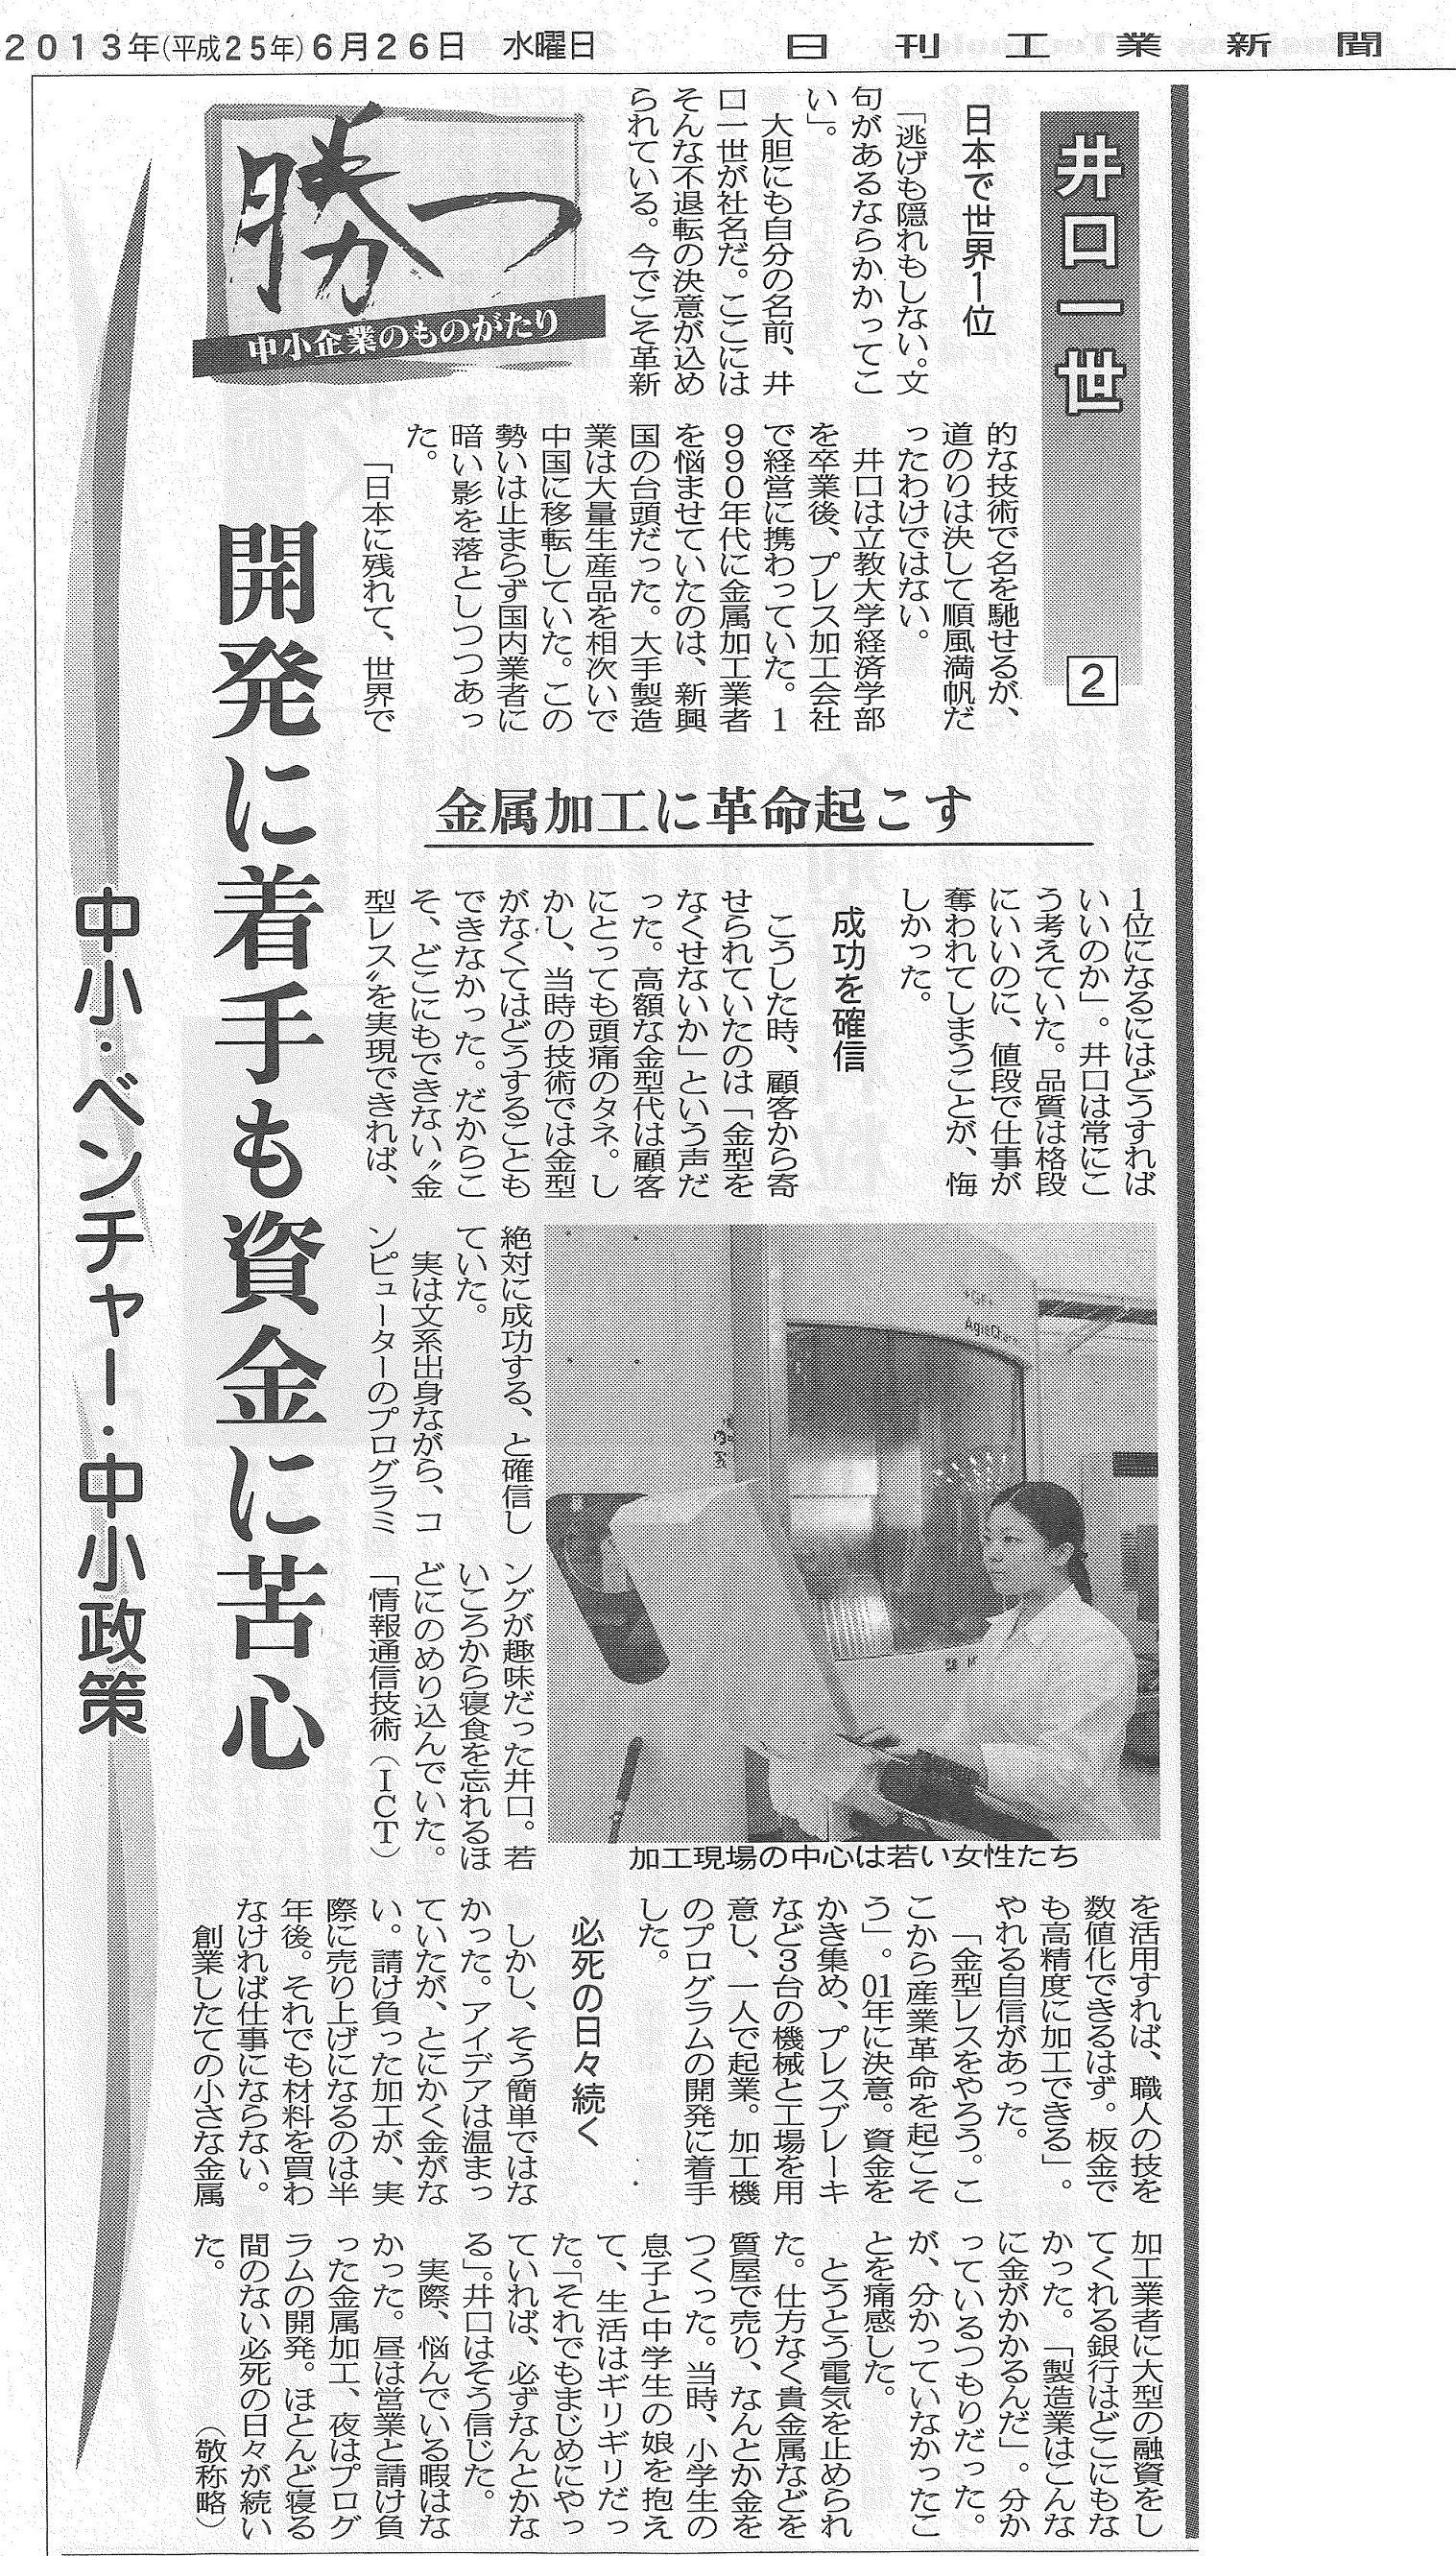 日刊工業新聞（2013年6月25日〜28日）にて、弊社が紹介されました